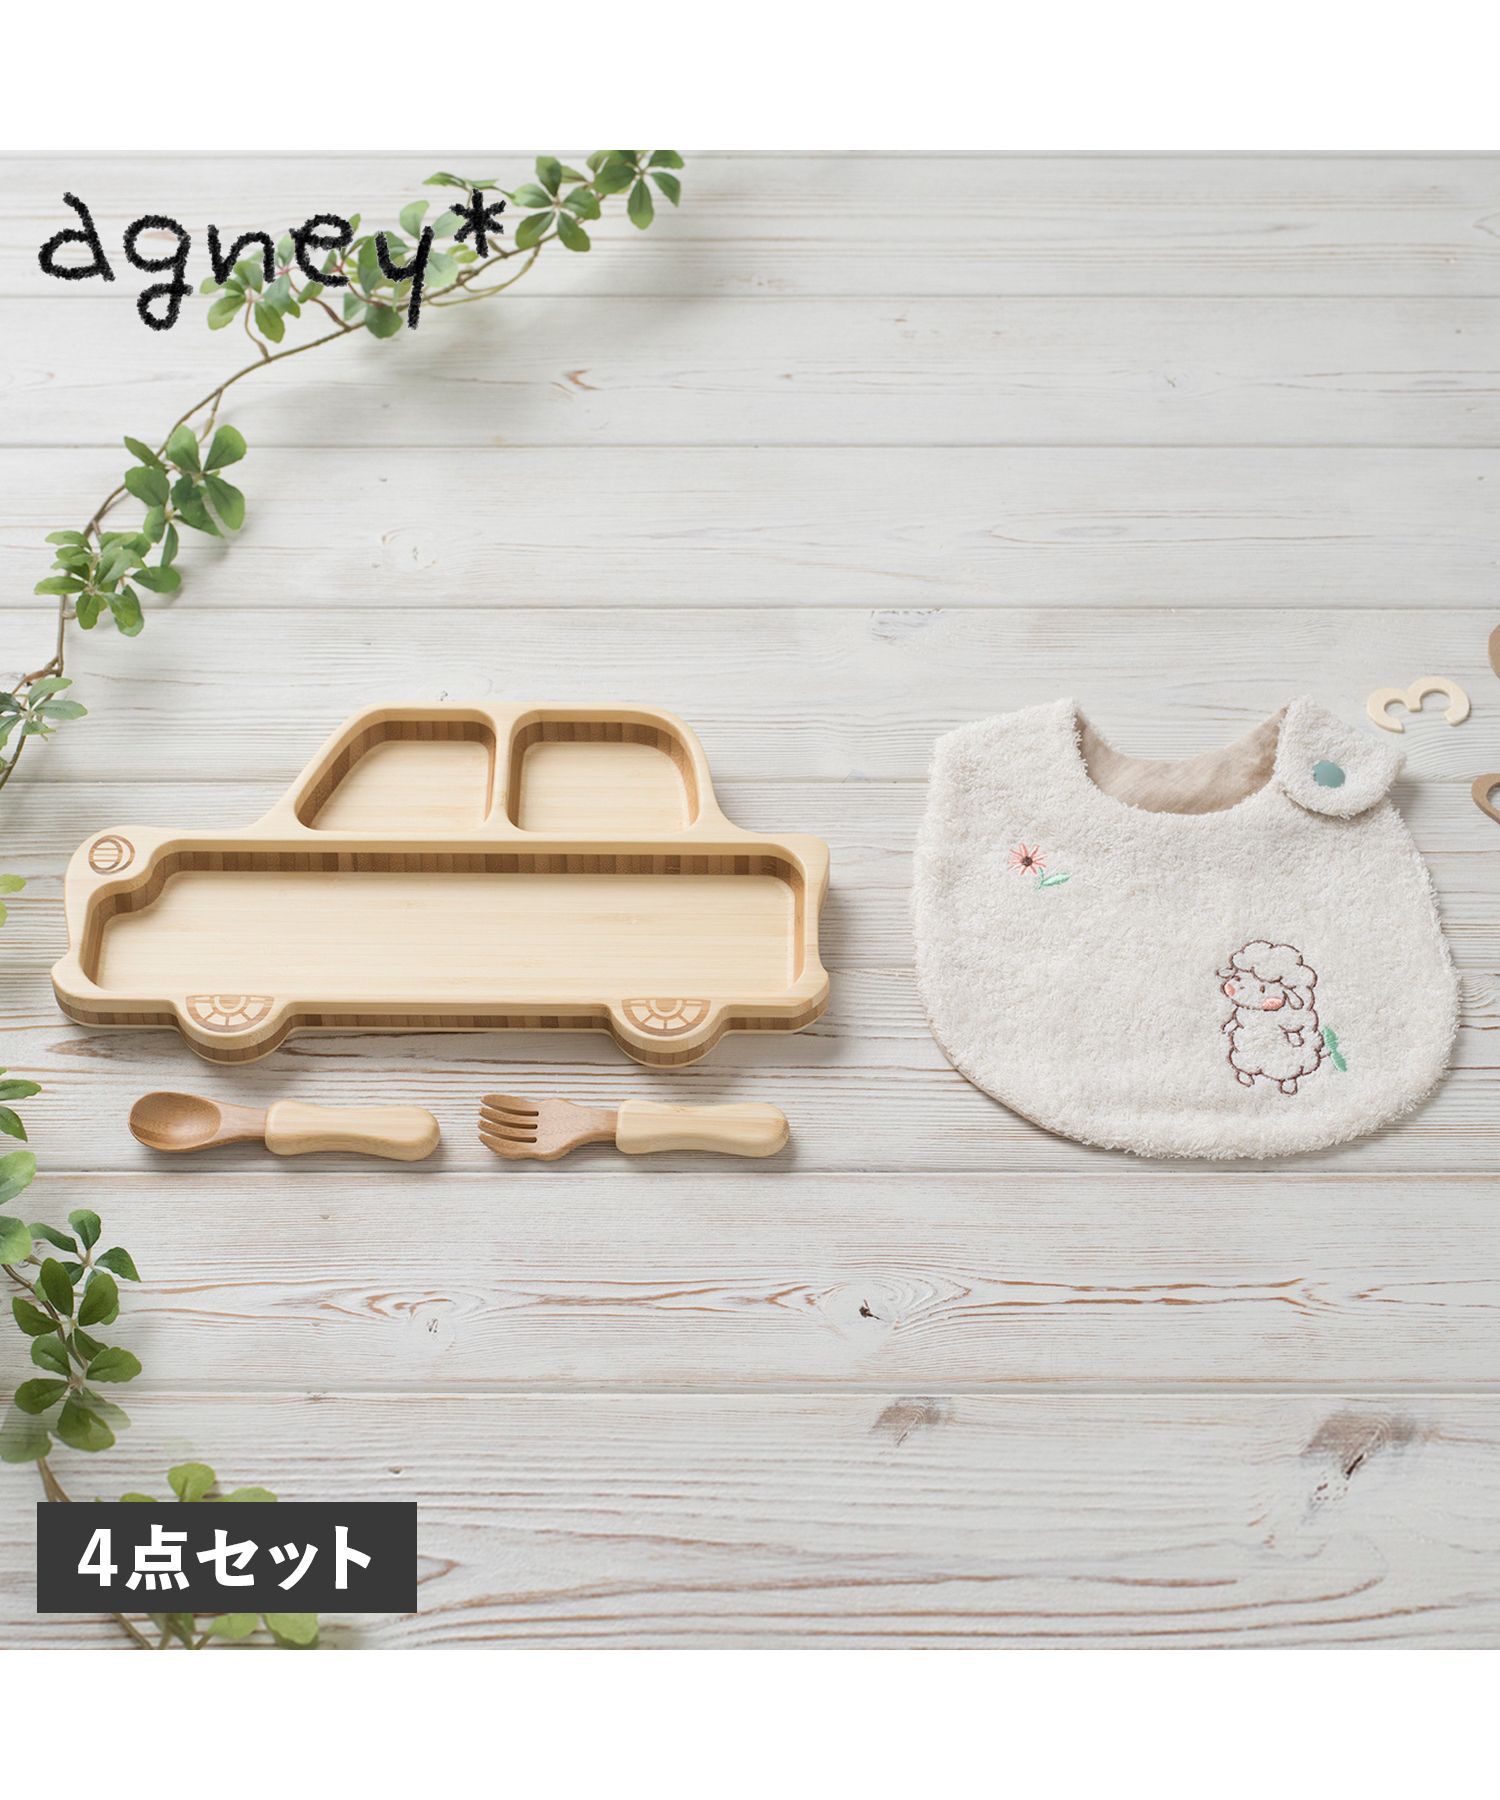 agney アグニー 子供 食器セットワンプレート くるまプレート アグニースタイ 4点セット 男の子 女の子 ベビー 赤ちゃん 天然素材 日本製  食洗器対応